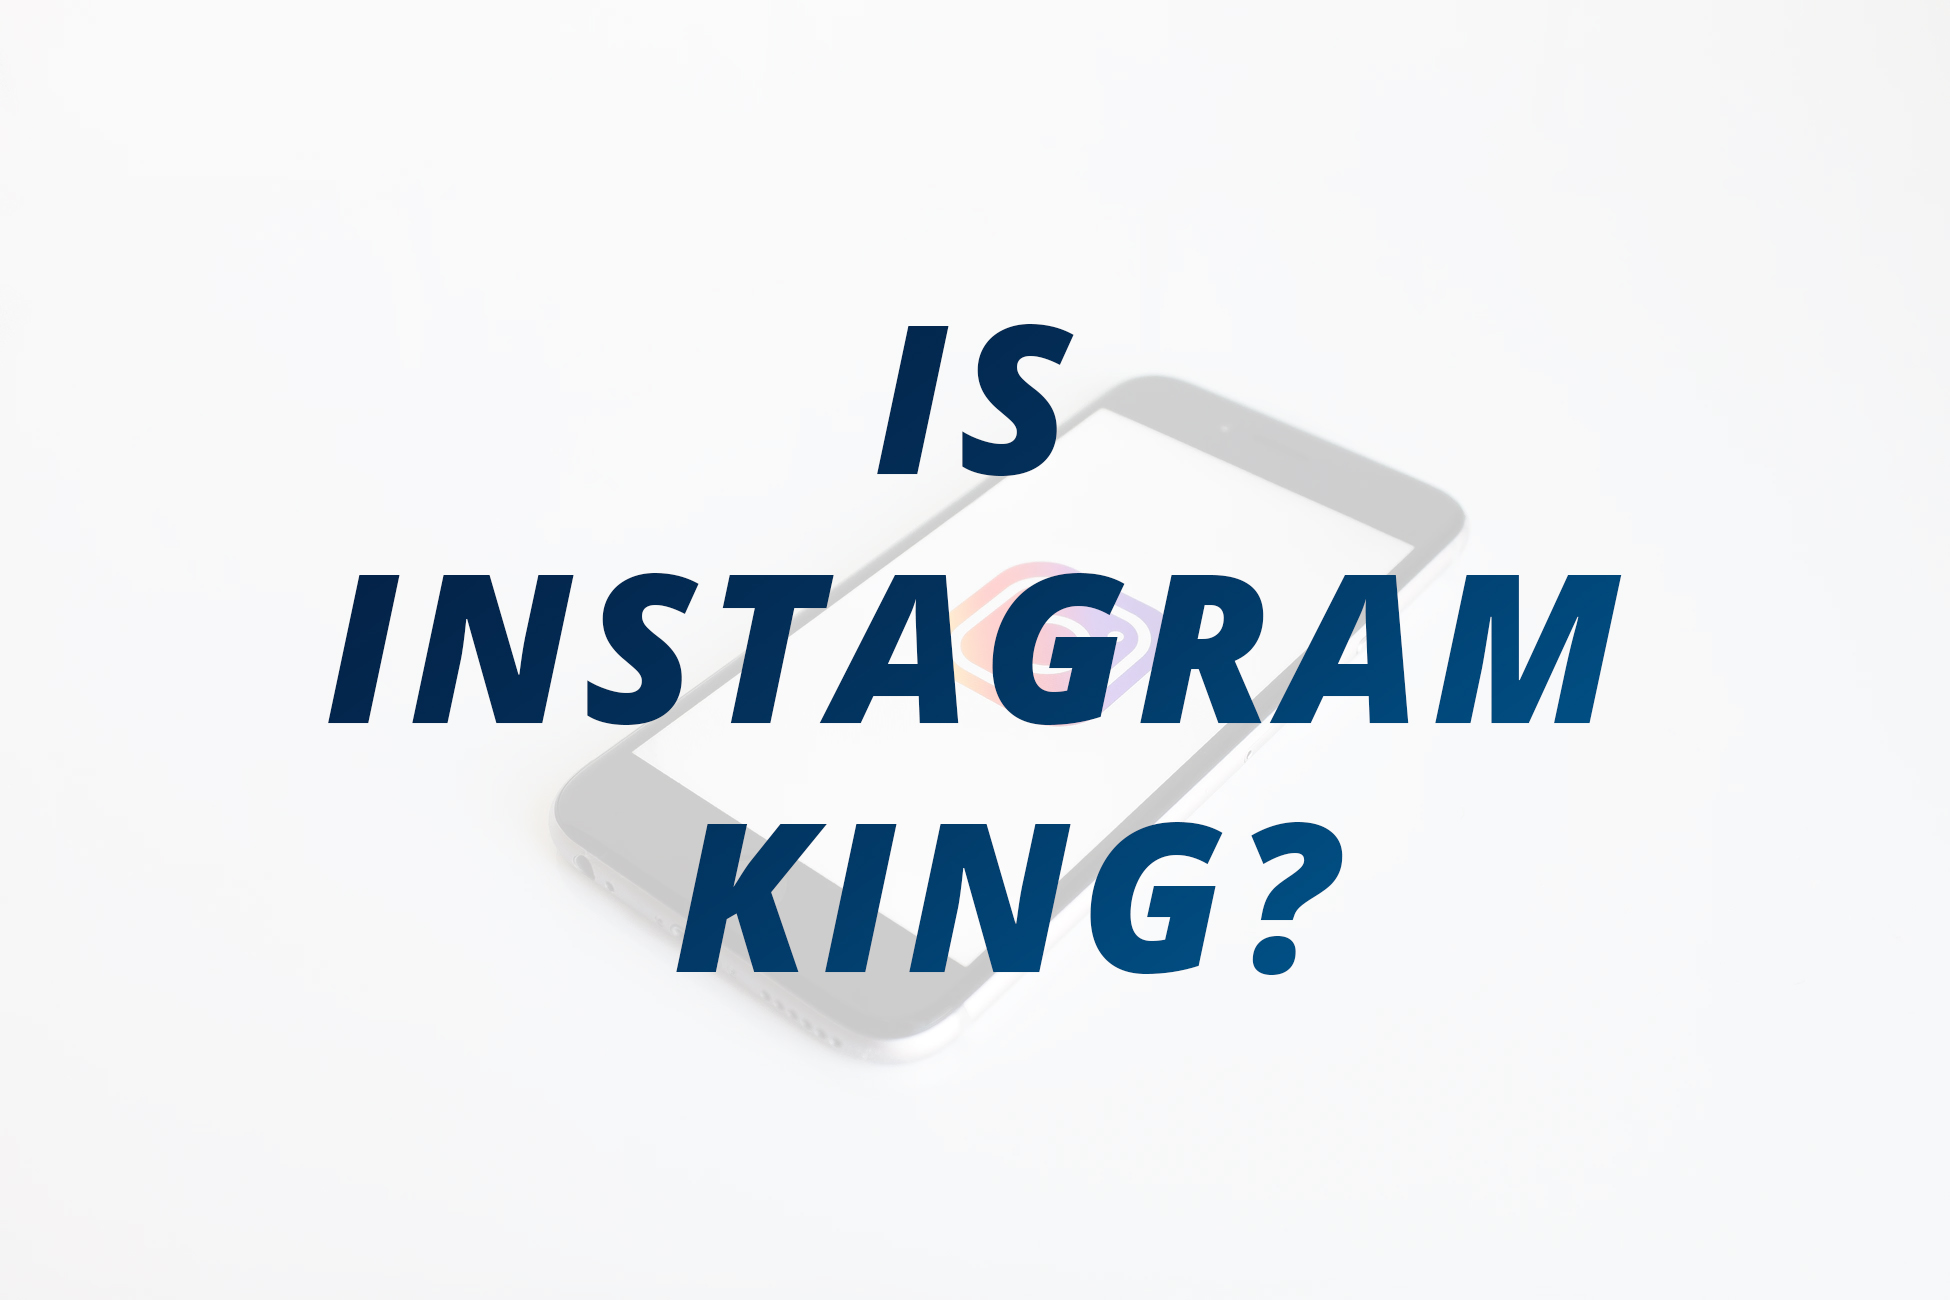 Instagram Dethrones the King in a Snap - Digital Air Strike